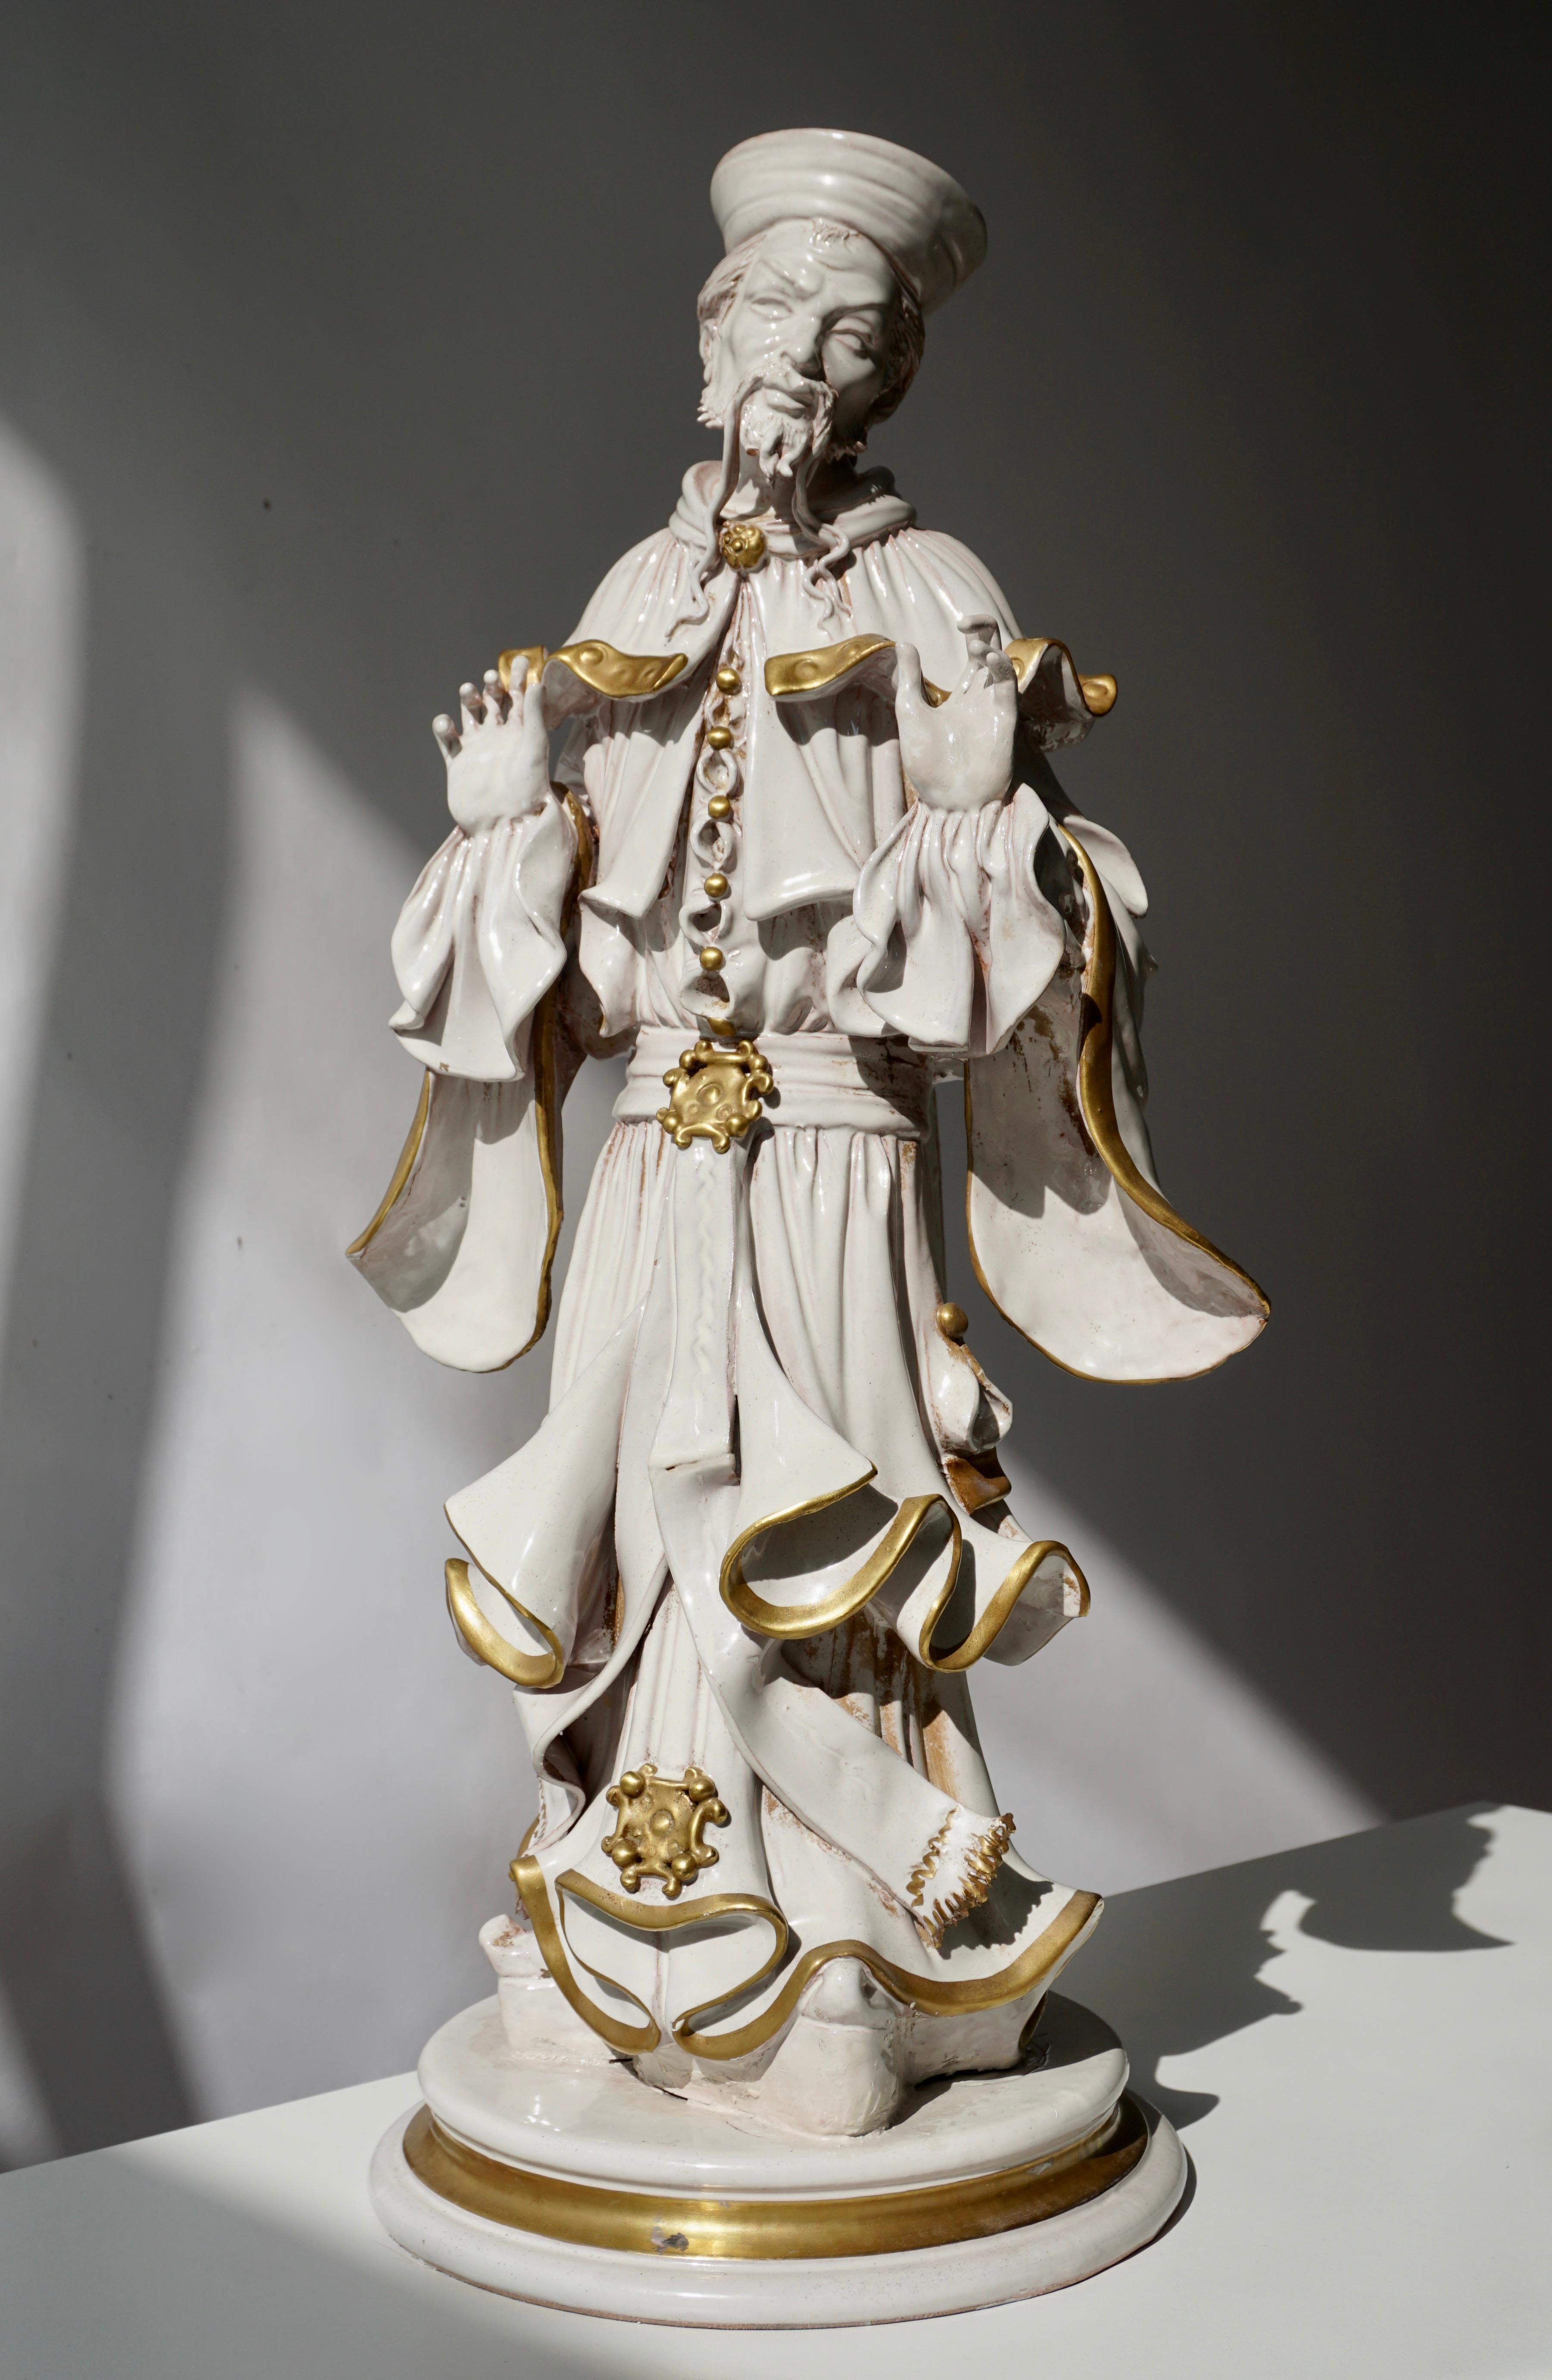 Sculpture en porcelaine italienne.
Mesures : Hauteur 56 cm.
Largeur 26 cm.
Profondeur 22 cm.